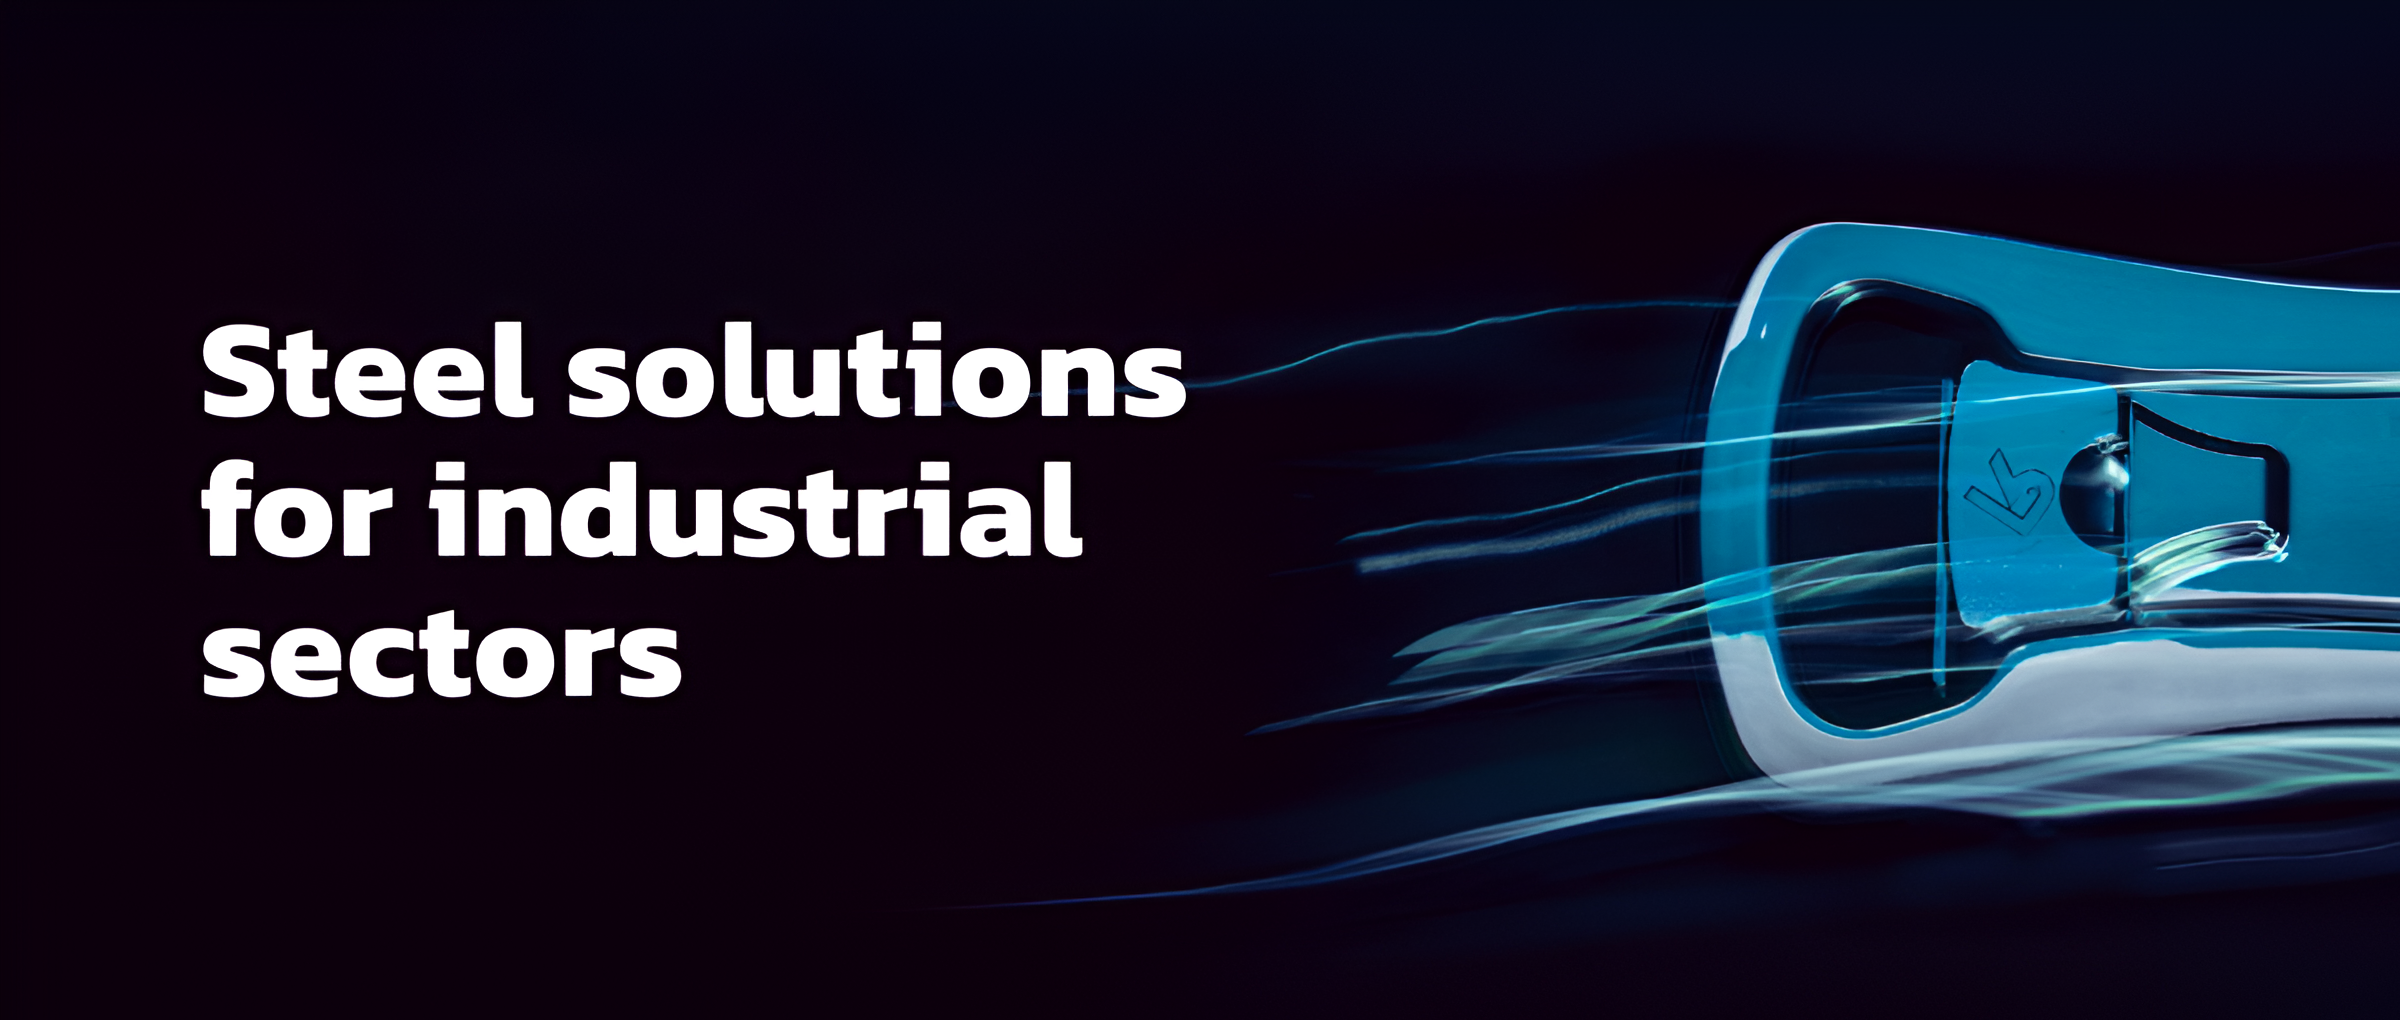 Aris steel solutions website catalog